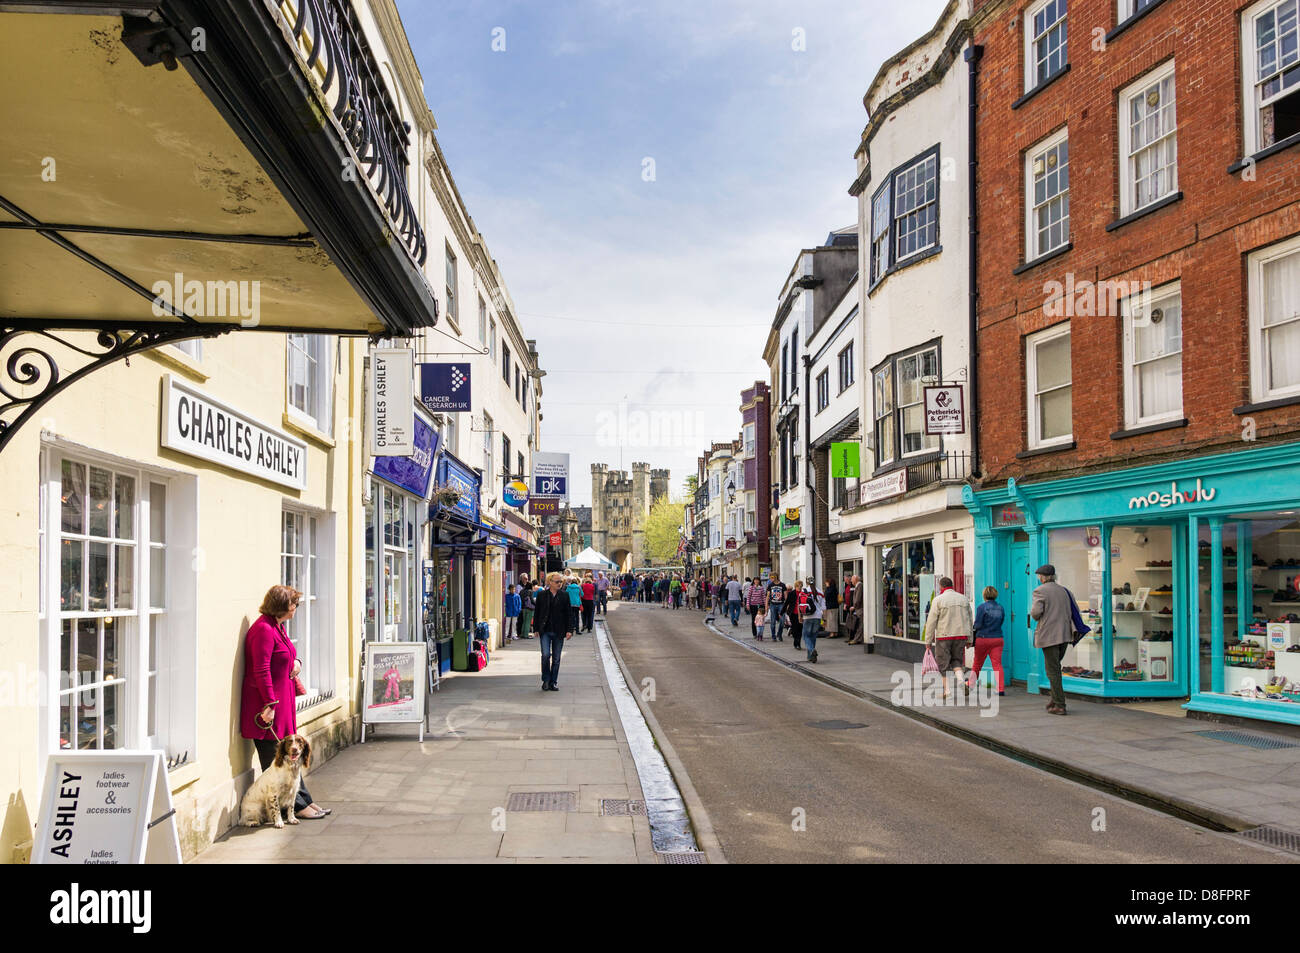 High street scene in pozzetti, Somerset, Inghilterra, Regno Unito Foto Stock